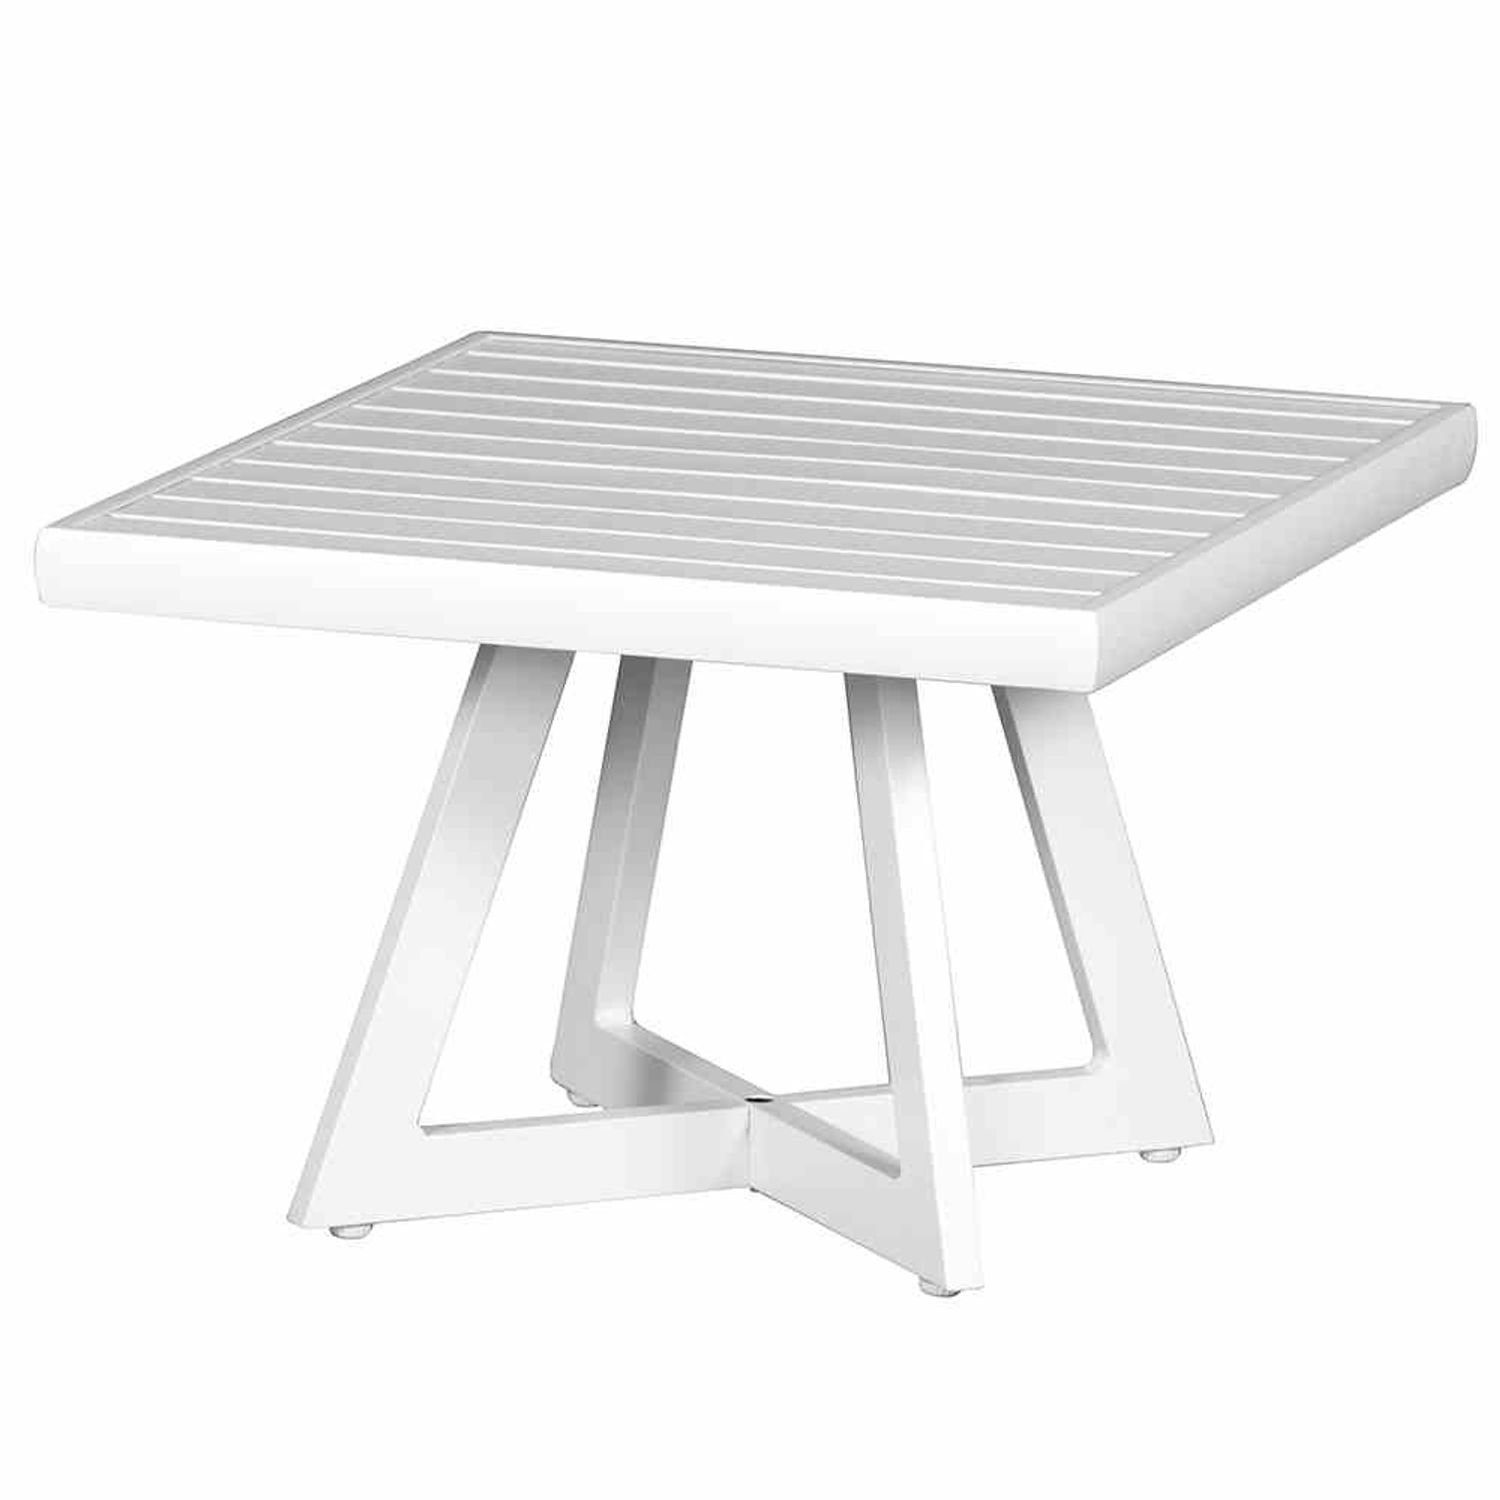 Lounge Tresentisch Alexis 50x50 Gartentisch Gartentisch Siena matt-weiß Tisch Aluminium Garden